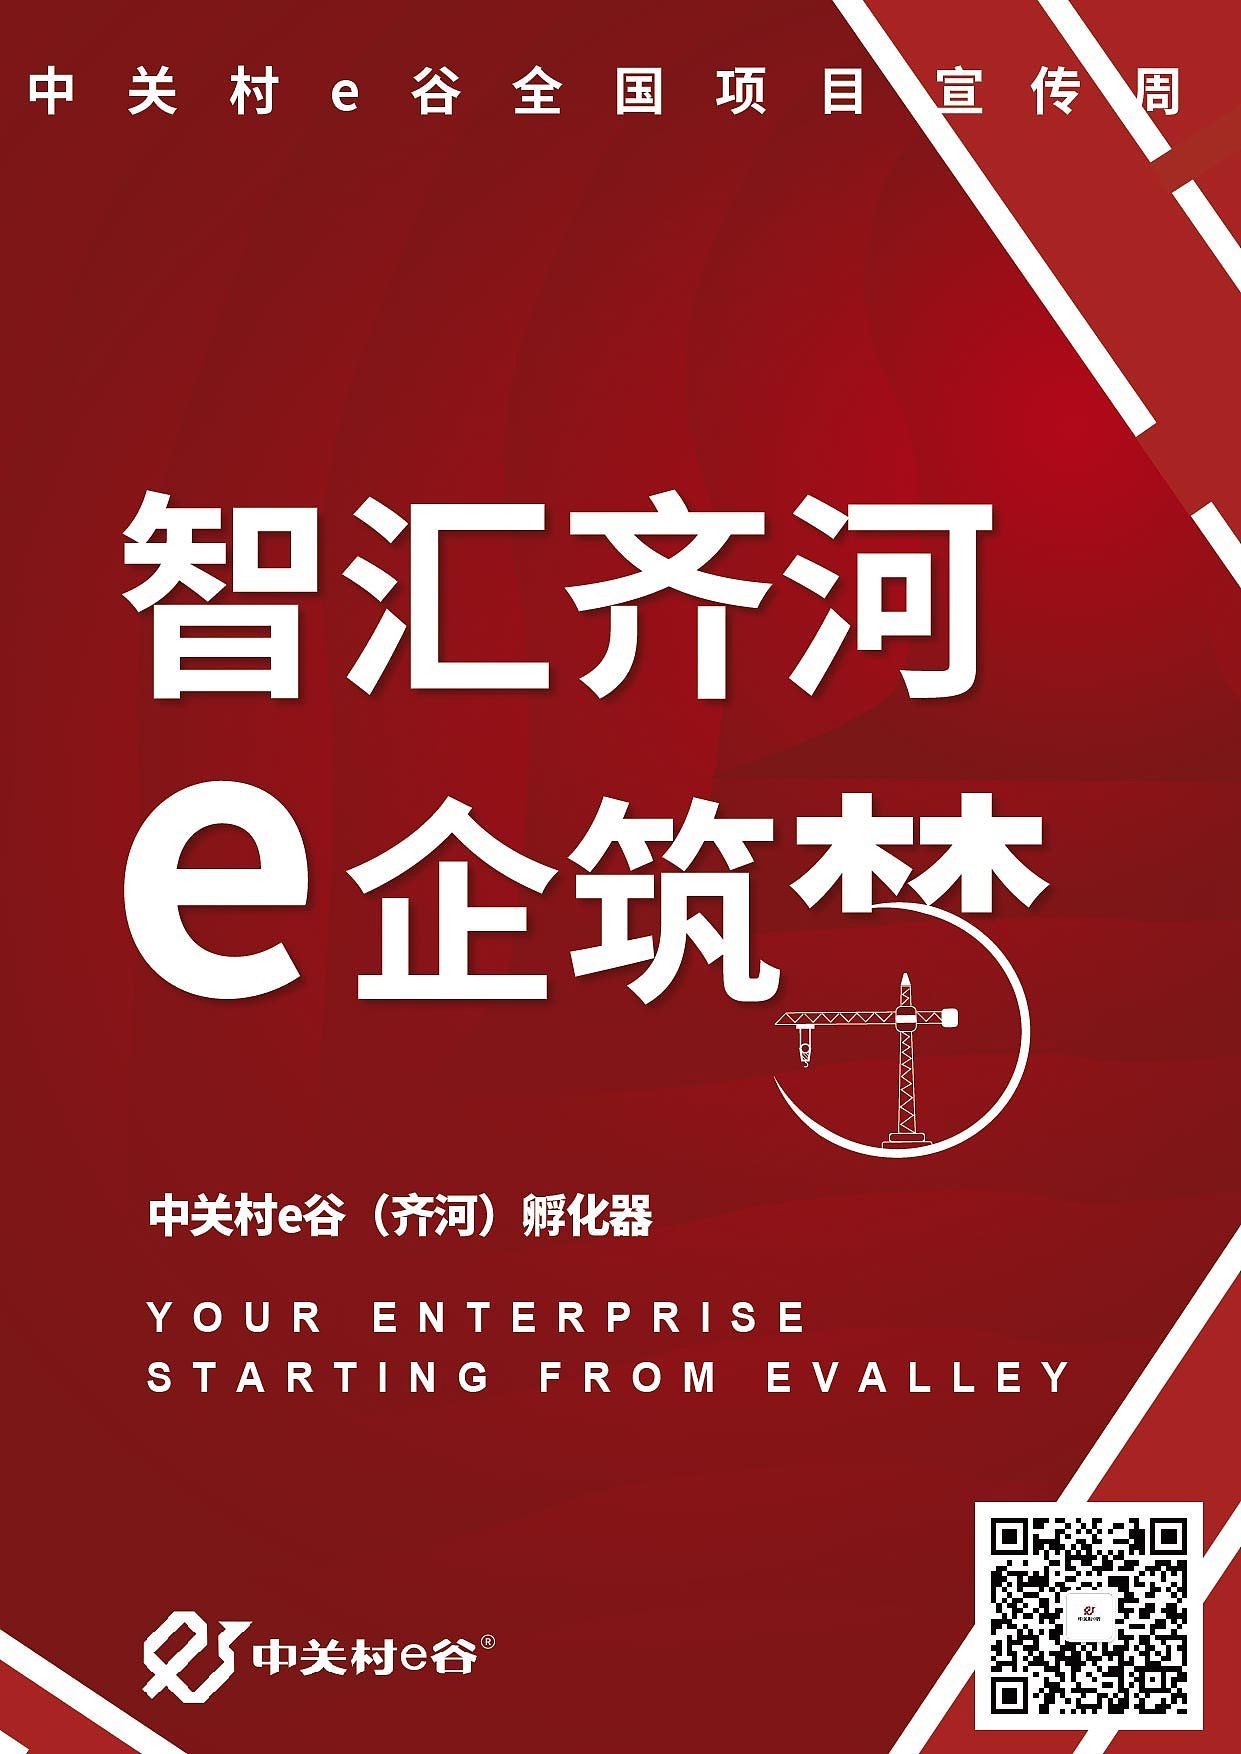 中关村e谷-项目宣传周海报图6